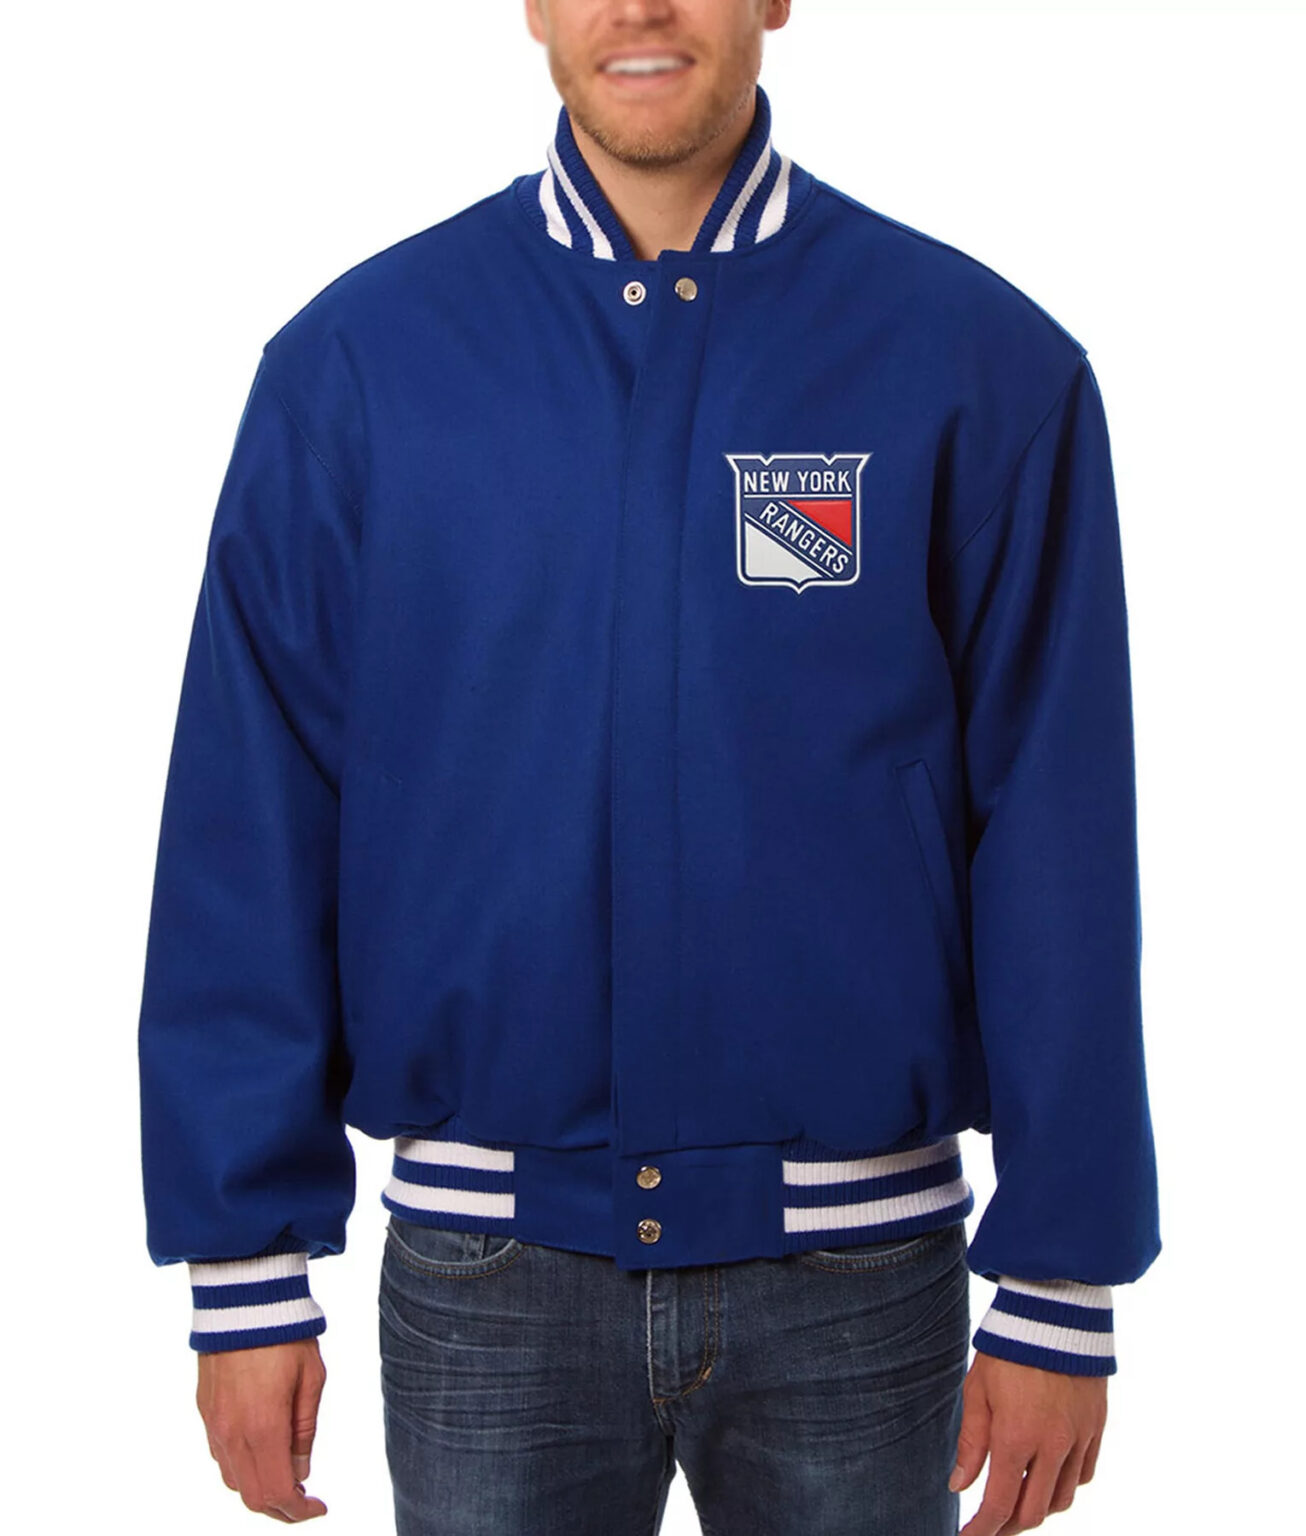 NY Rangers Varsity Jacket